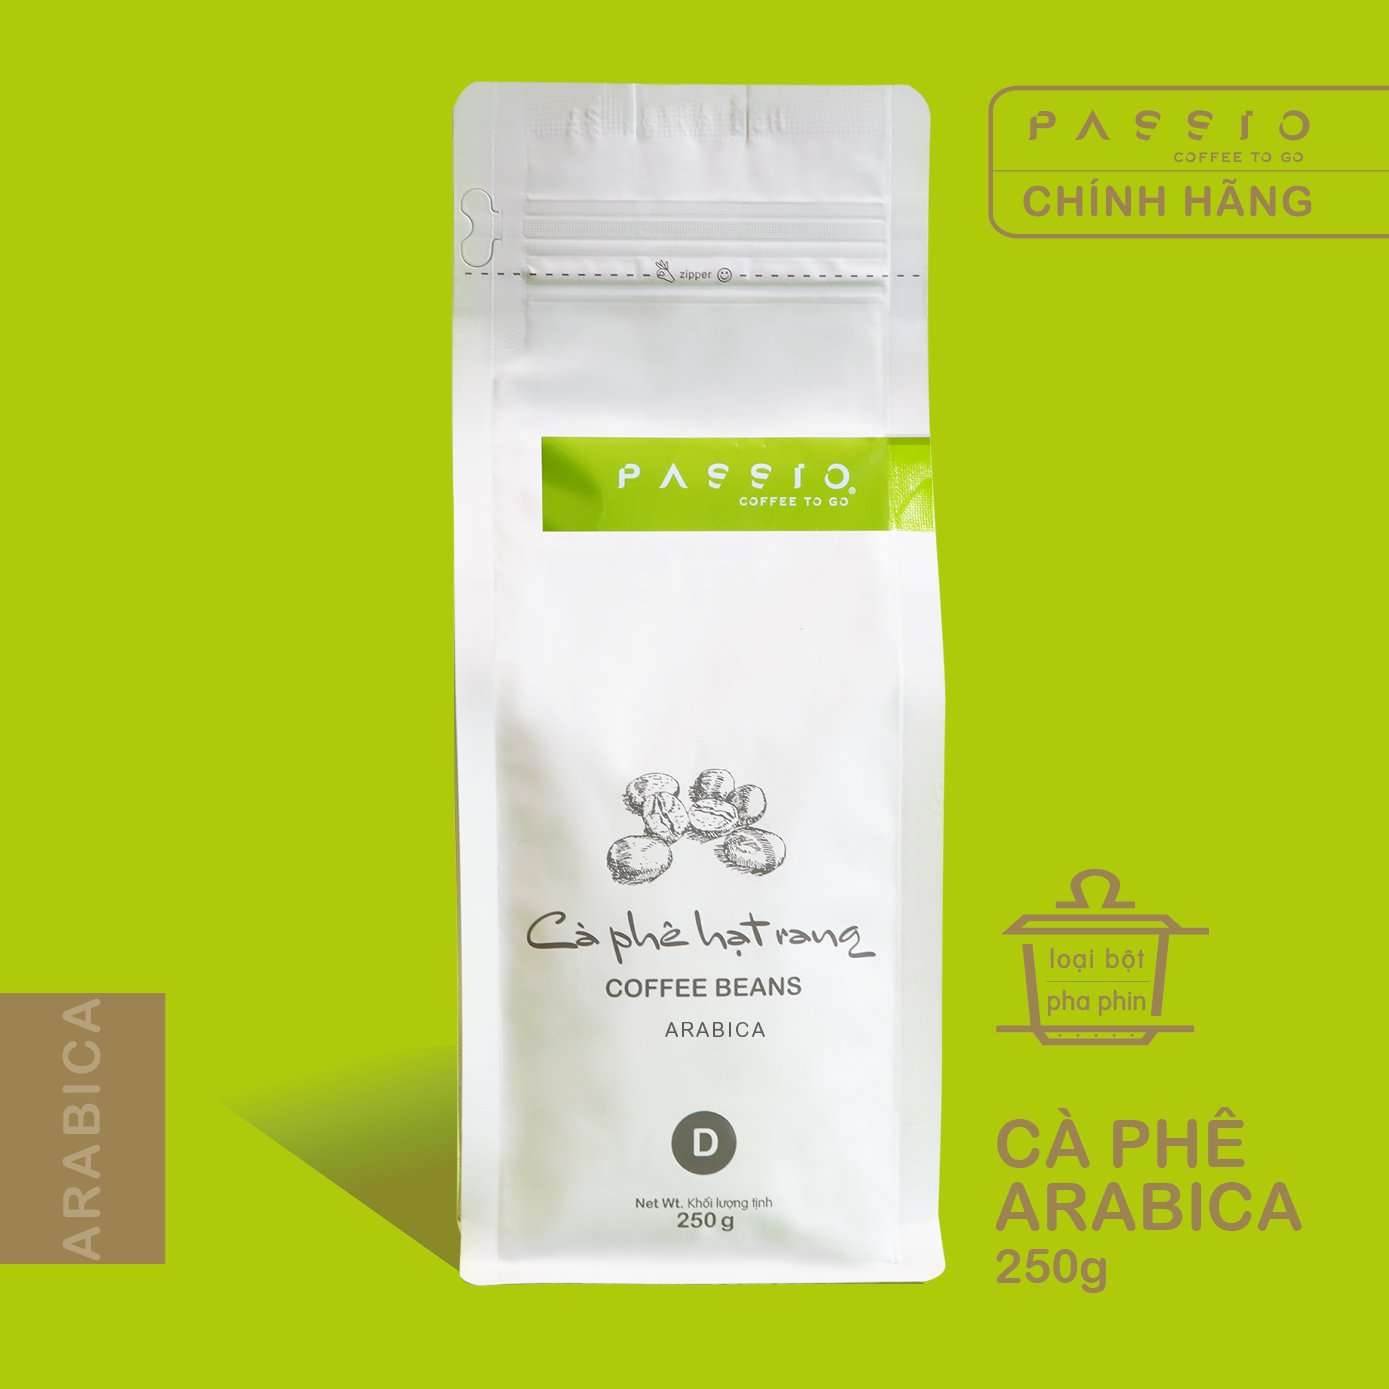 Cà phê Arabica nguyên chất rang mộc - Passio Coffee (250g)